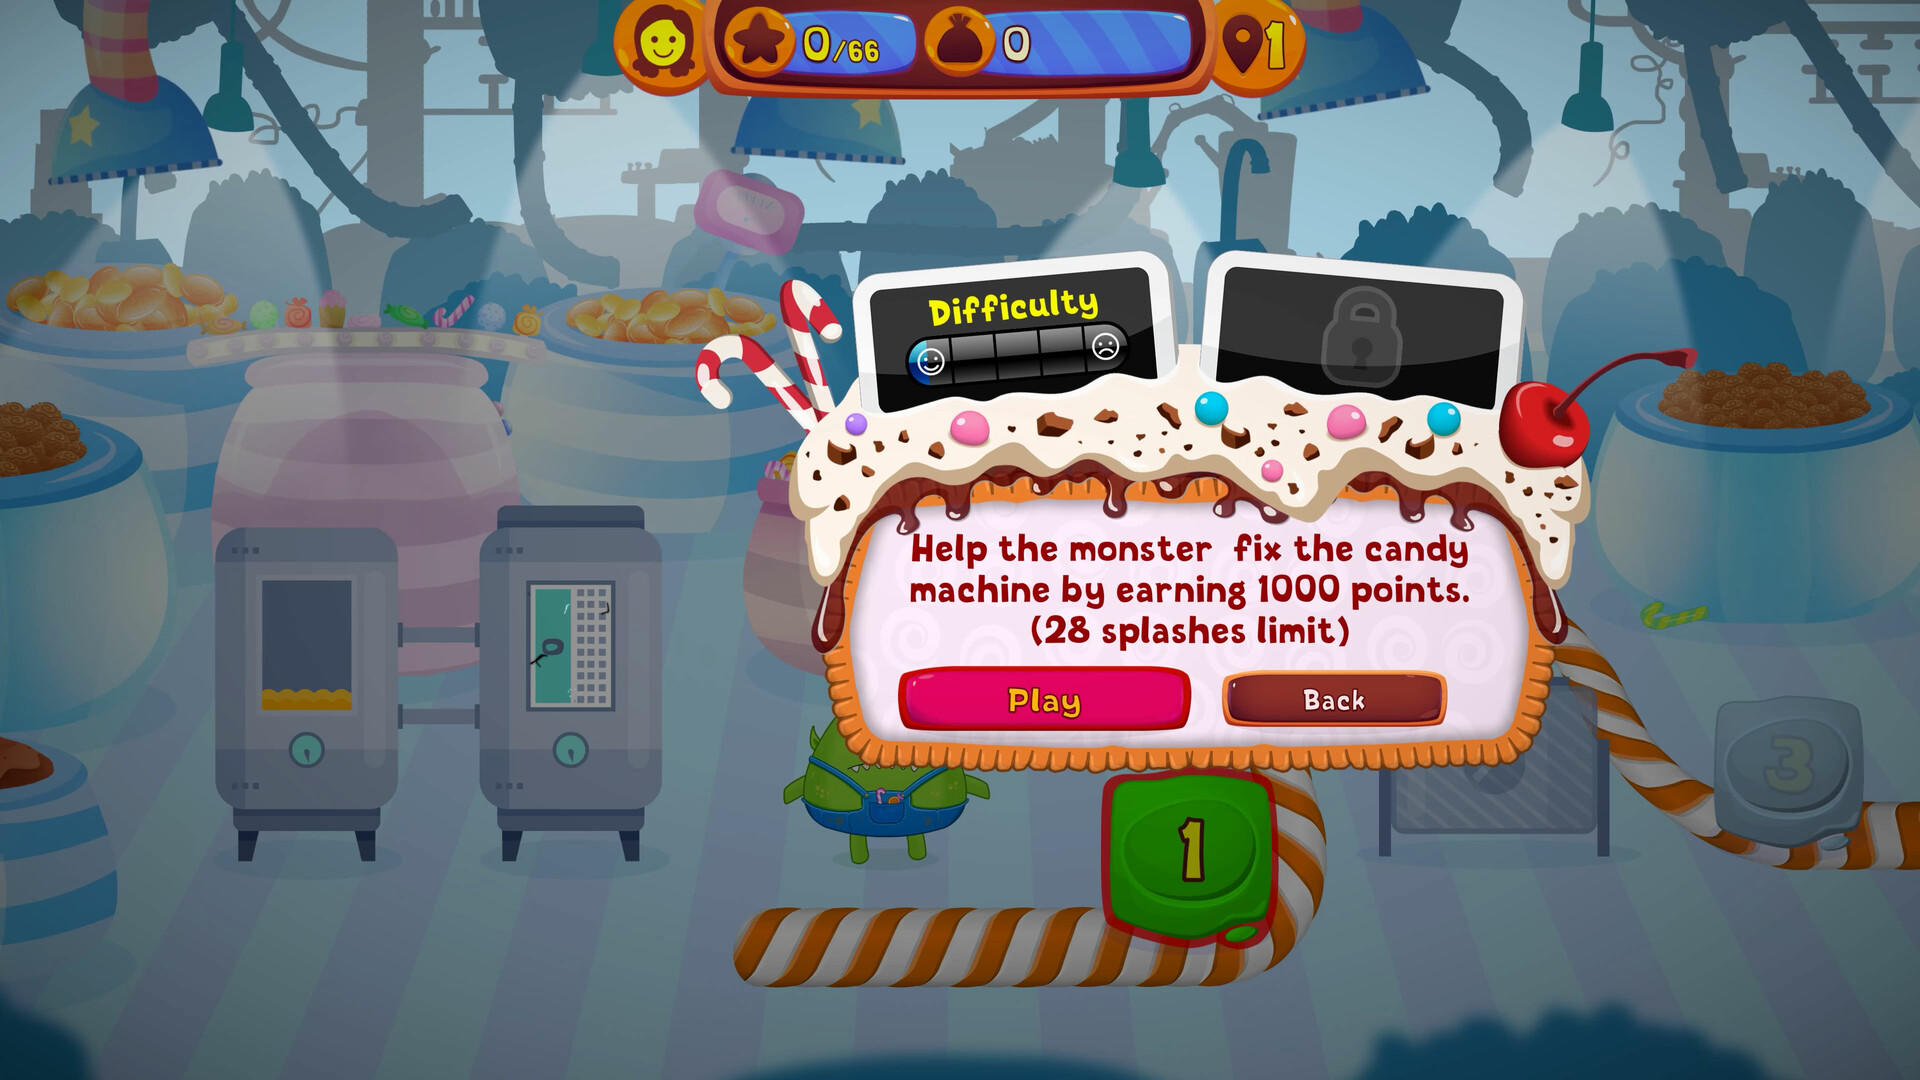 Paintball 3 - Candy Match Factory 게임 스크린 샷